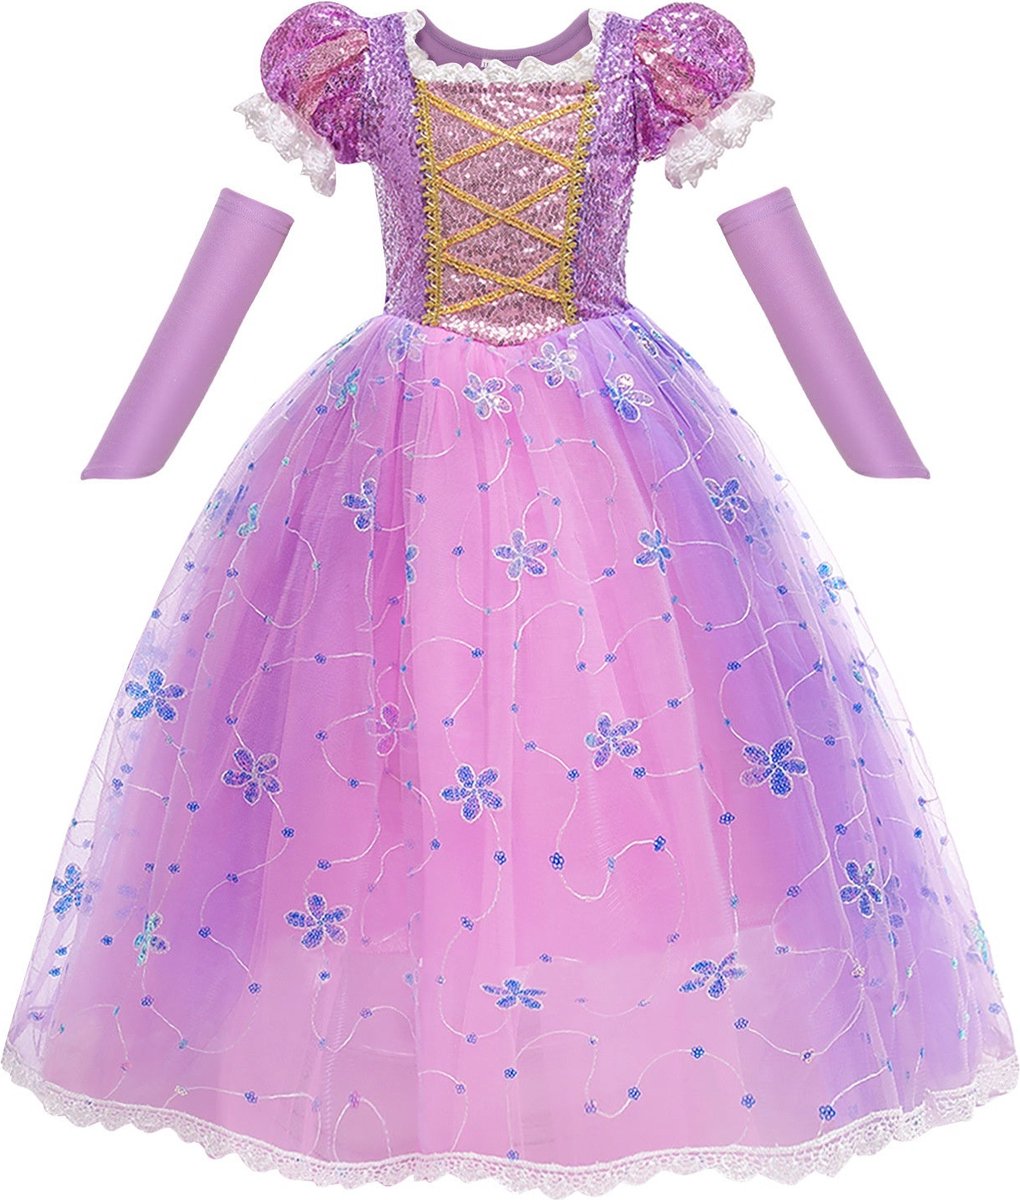 Rapunzel prinsessenjurk - Prinsessenjurk - Verkleedkleding - Maat 110/116 (4/5 jaar)